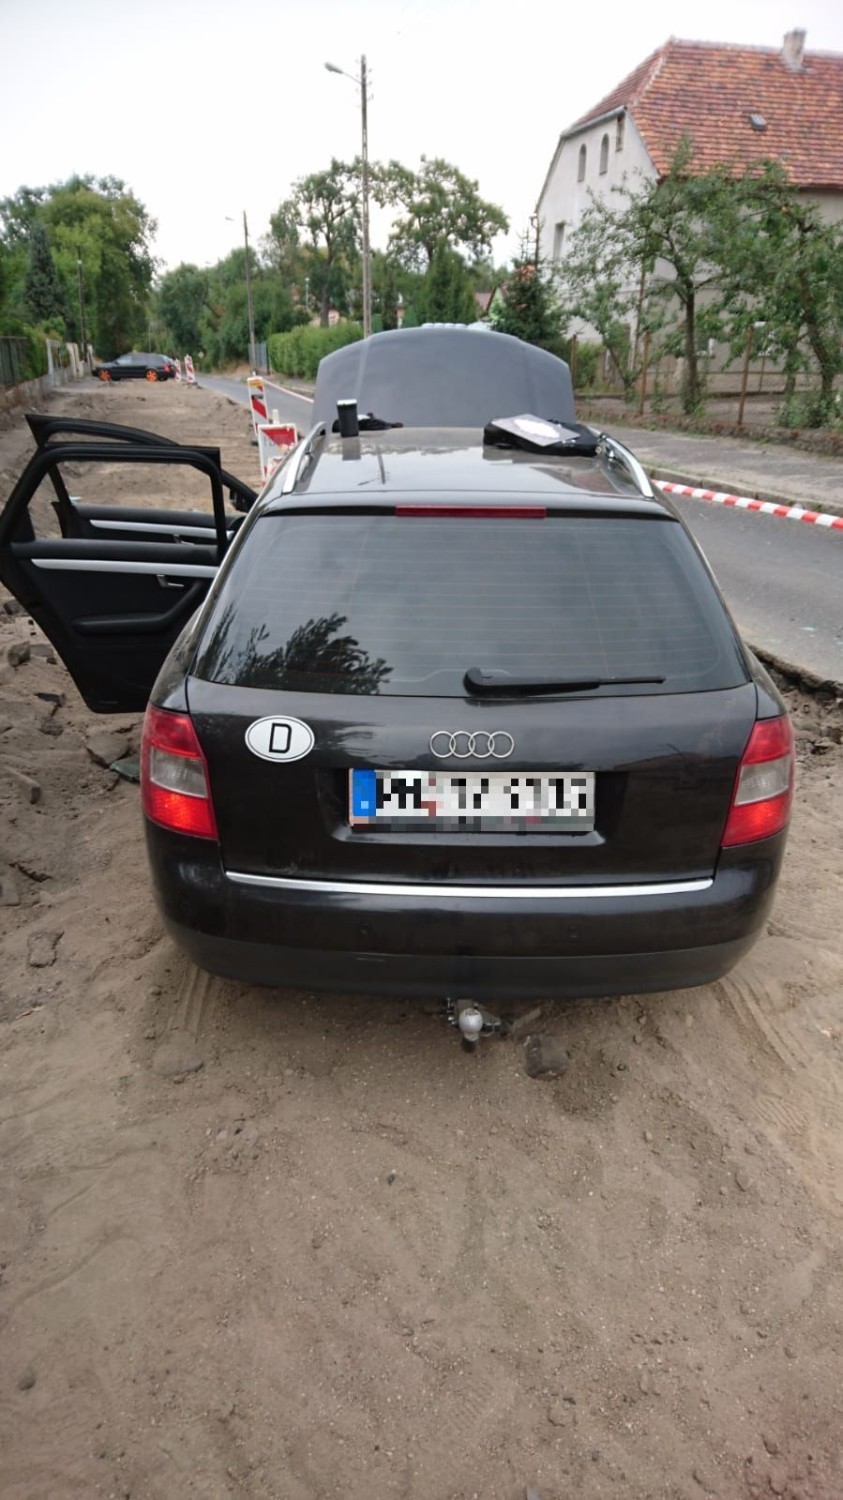 Uciekał przed policjantami skradzionym samochodem – był szukany przez niemiecki wymiar sprawiedliwości